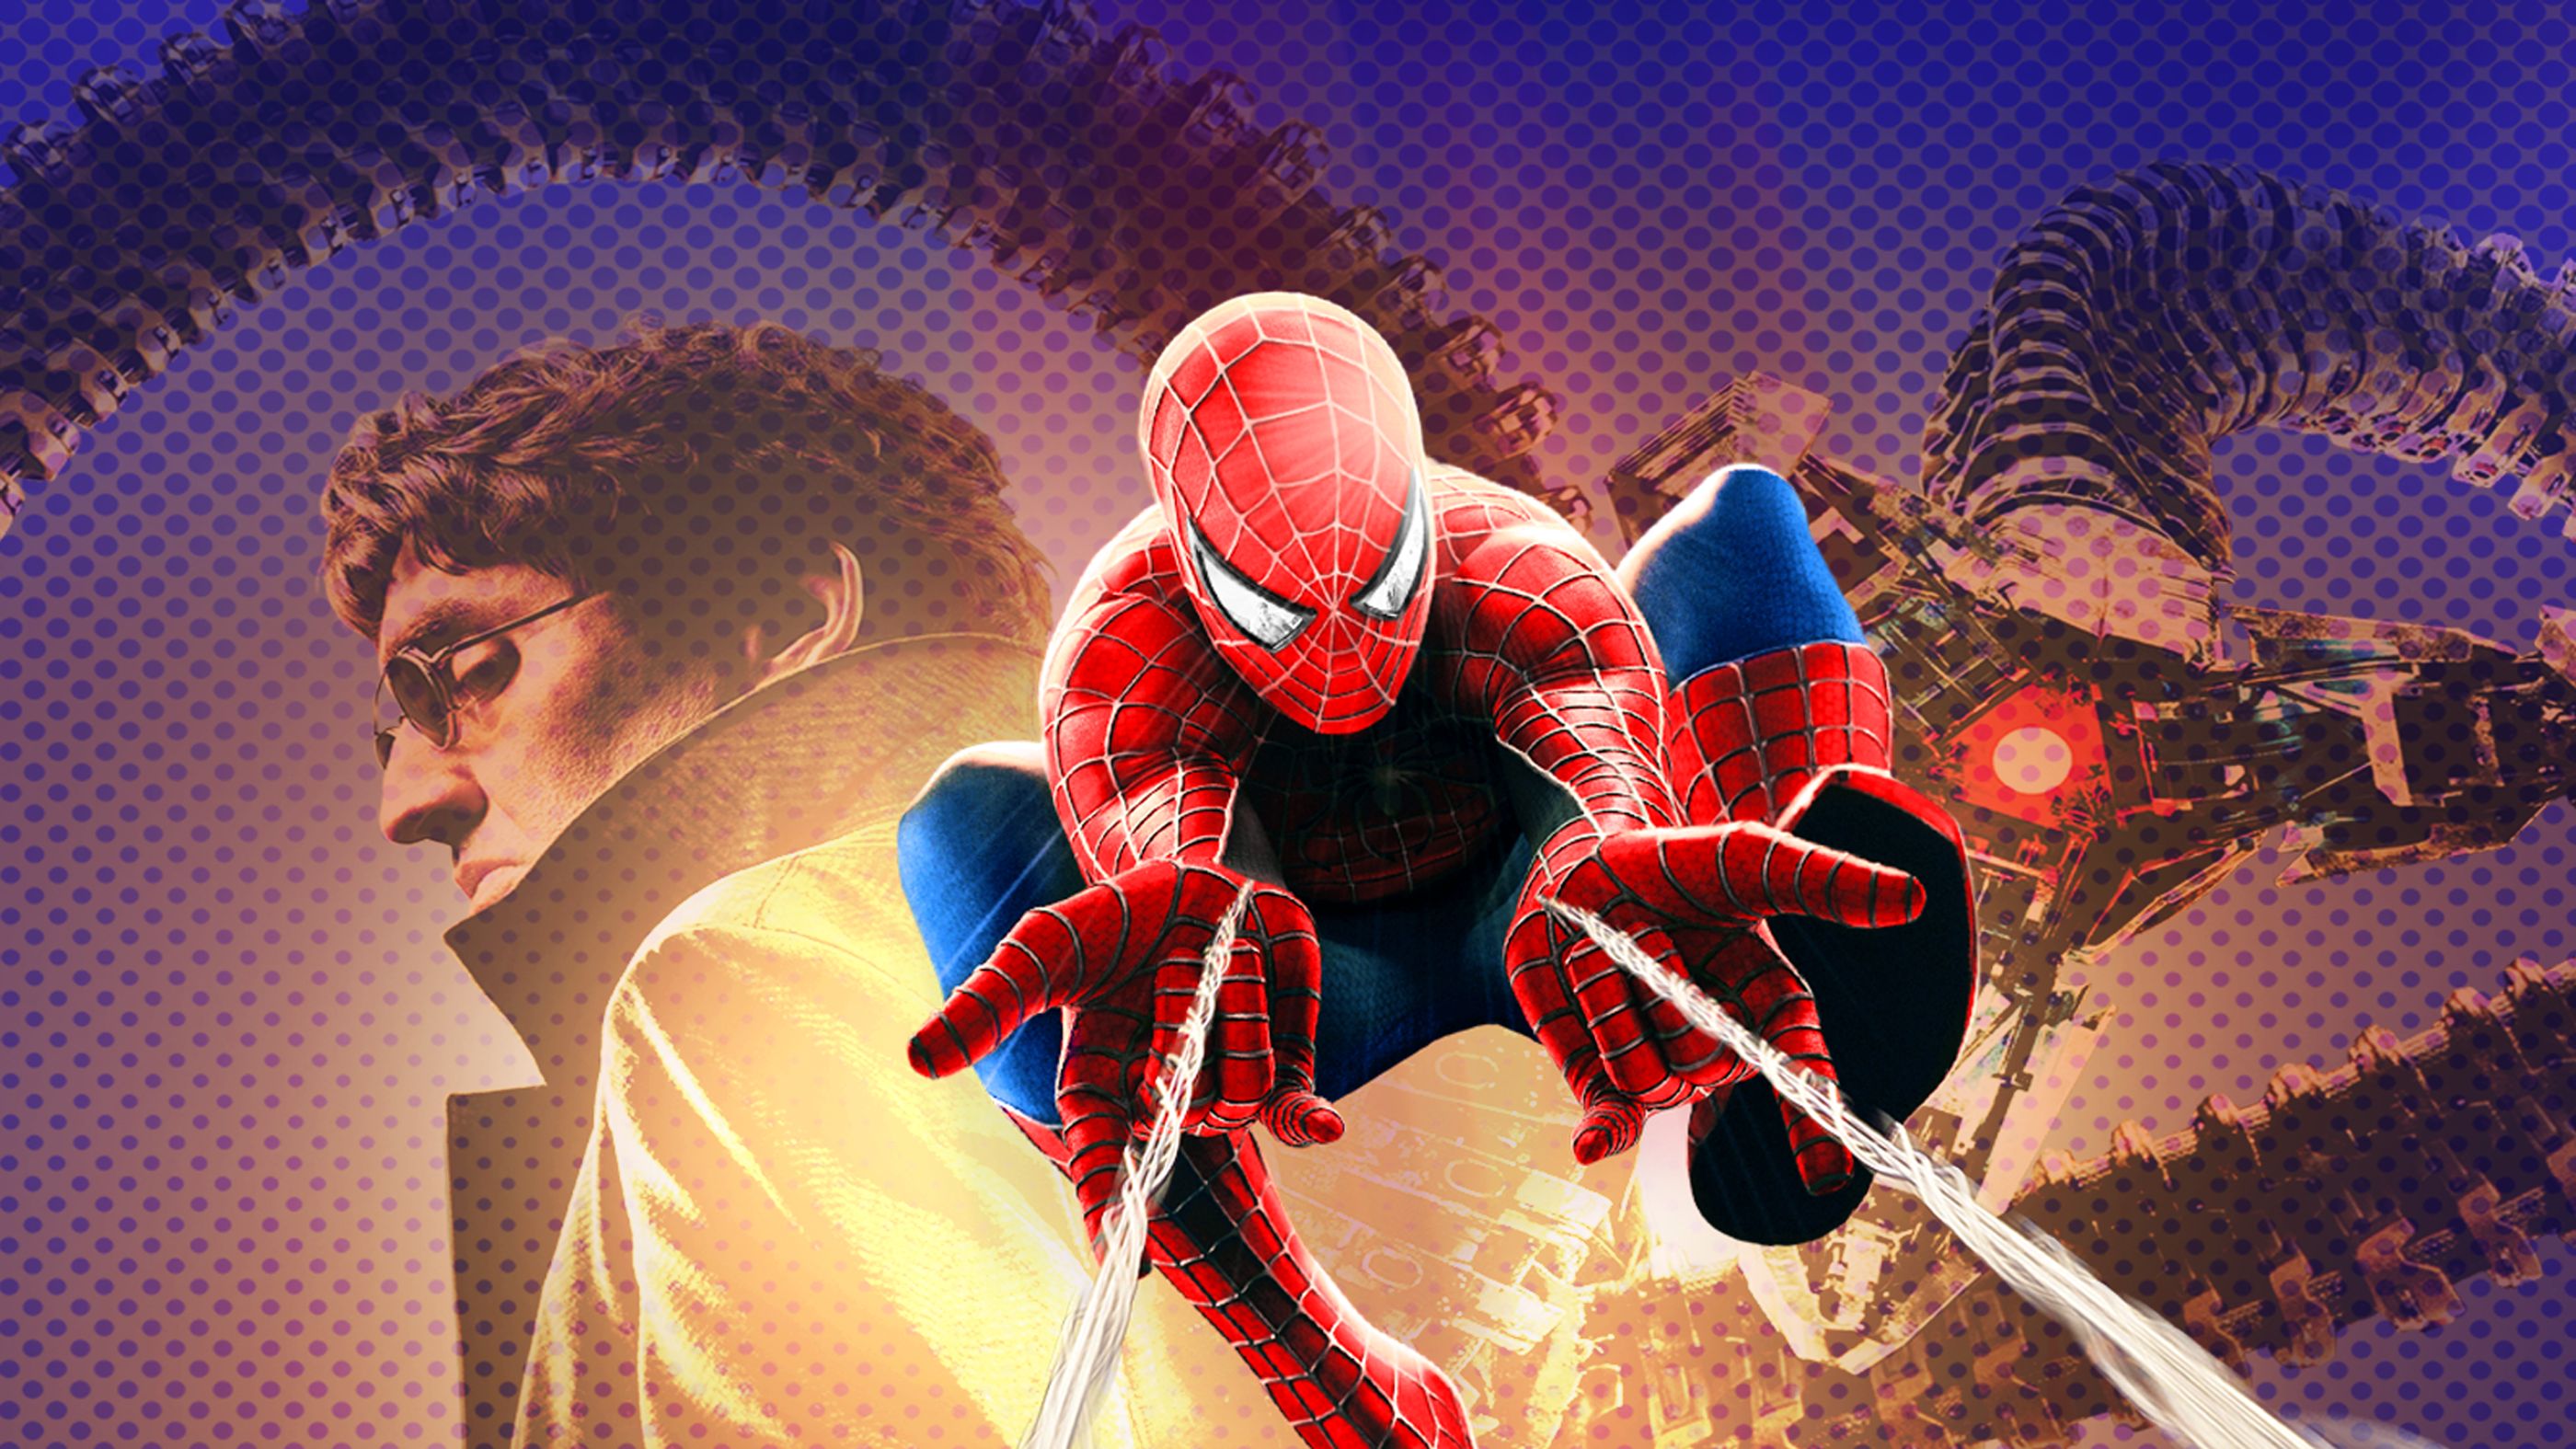 Спайдер ман 2. Человек паук 2004. Человек паук Сэма Рэйми 2. Человек паук 2 2004 Постер.